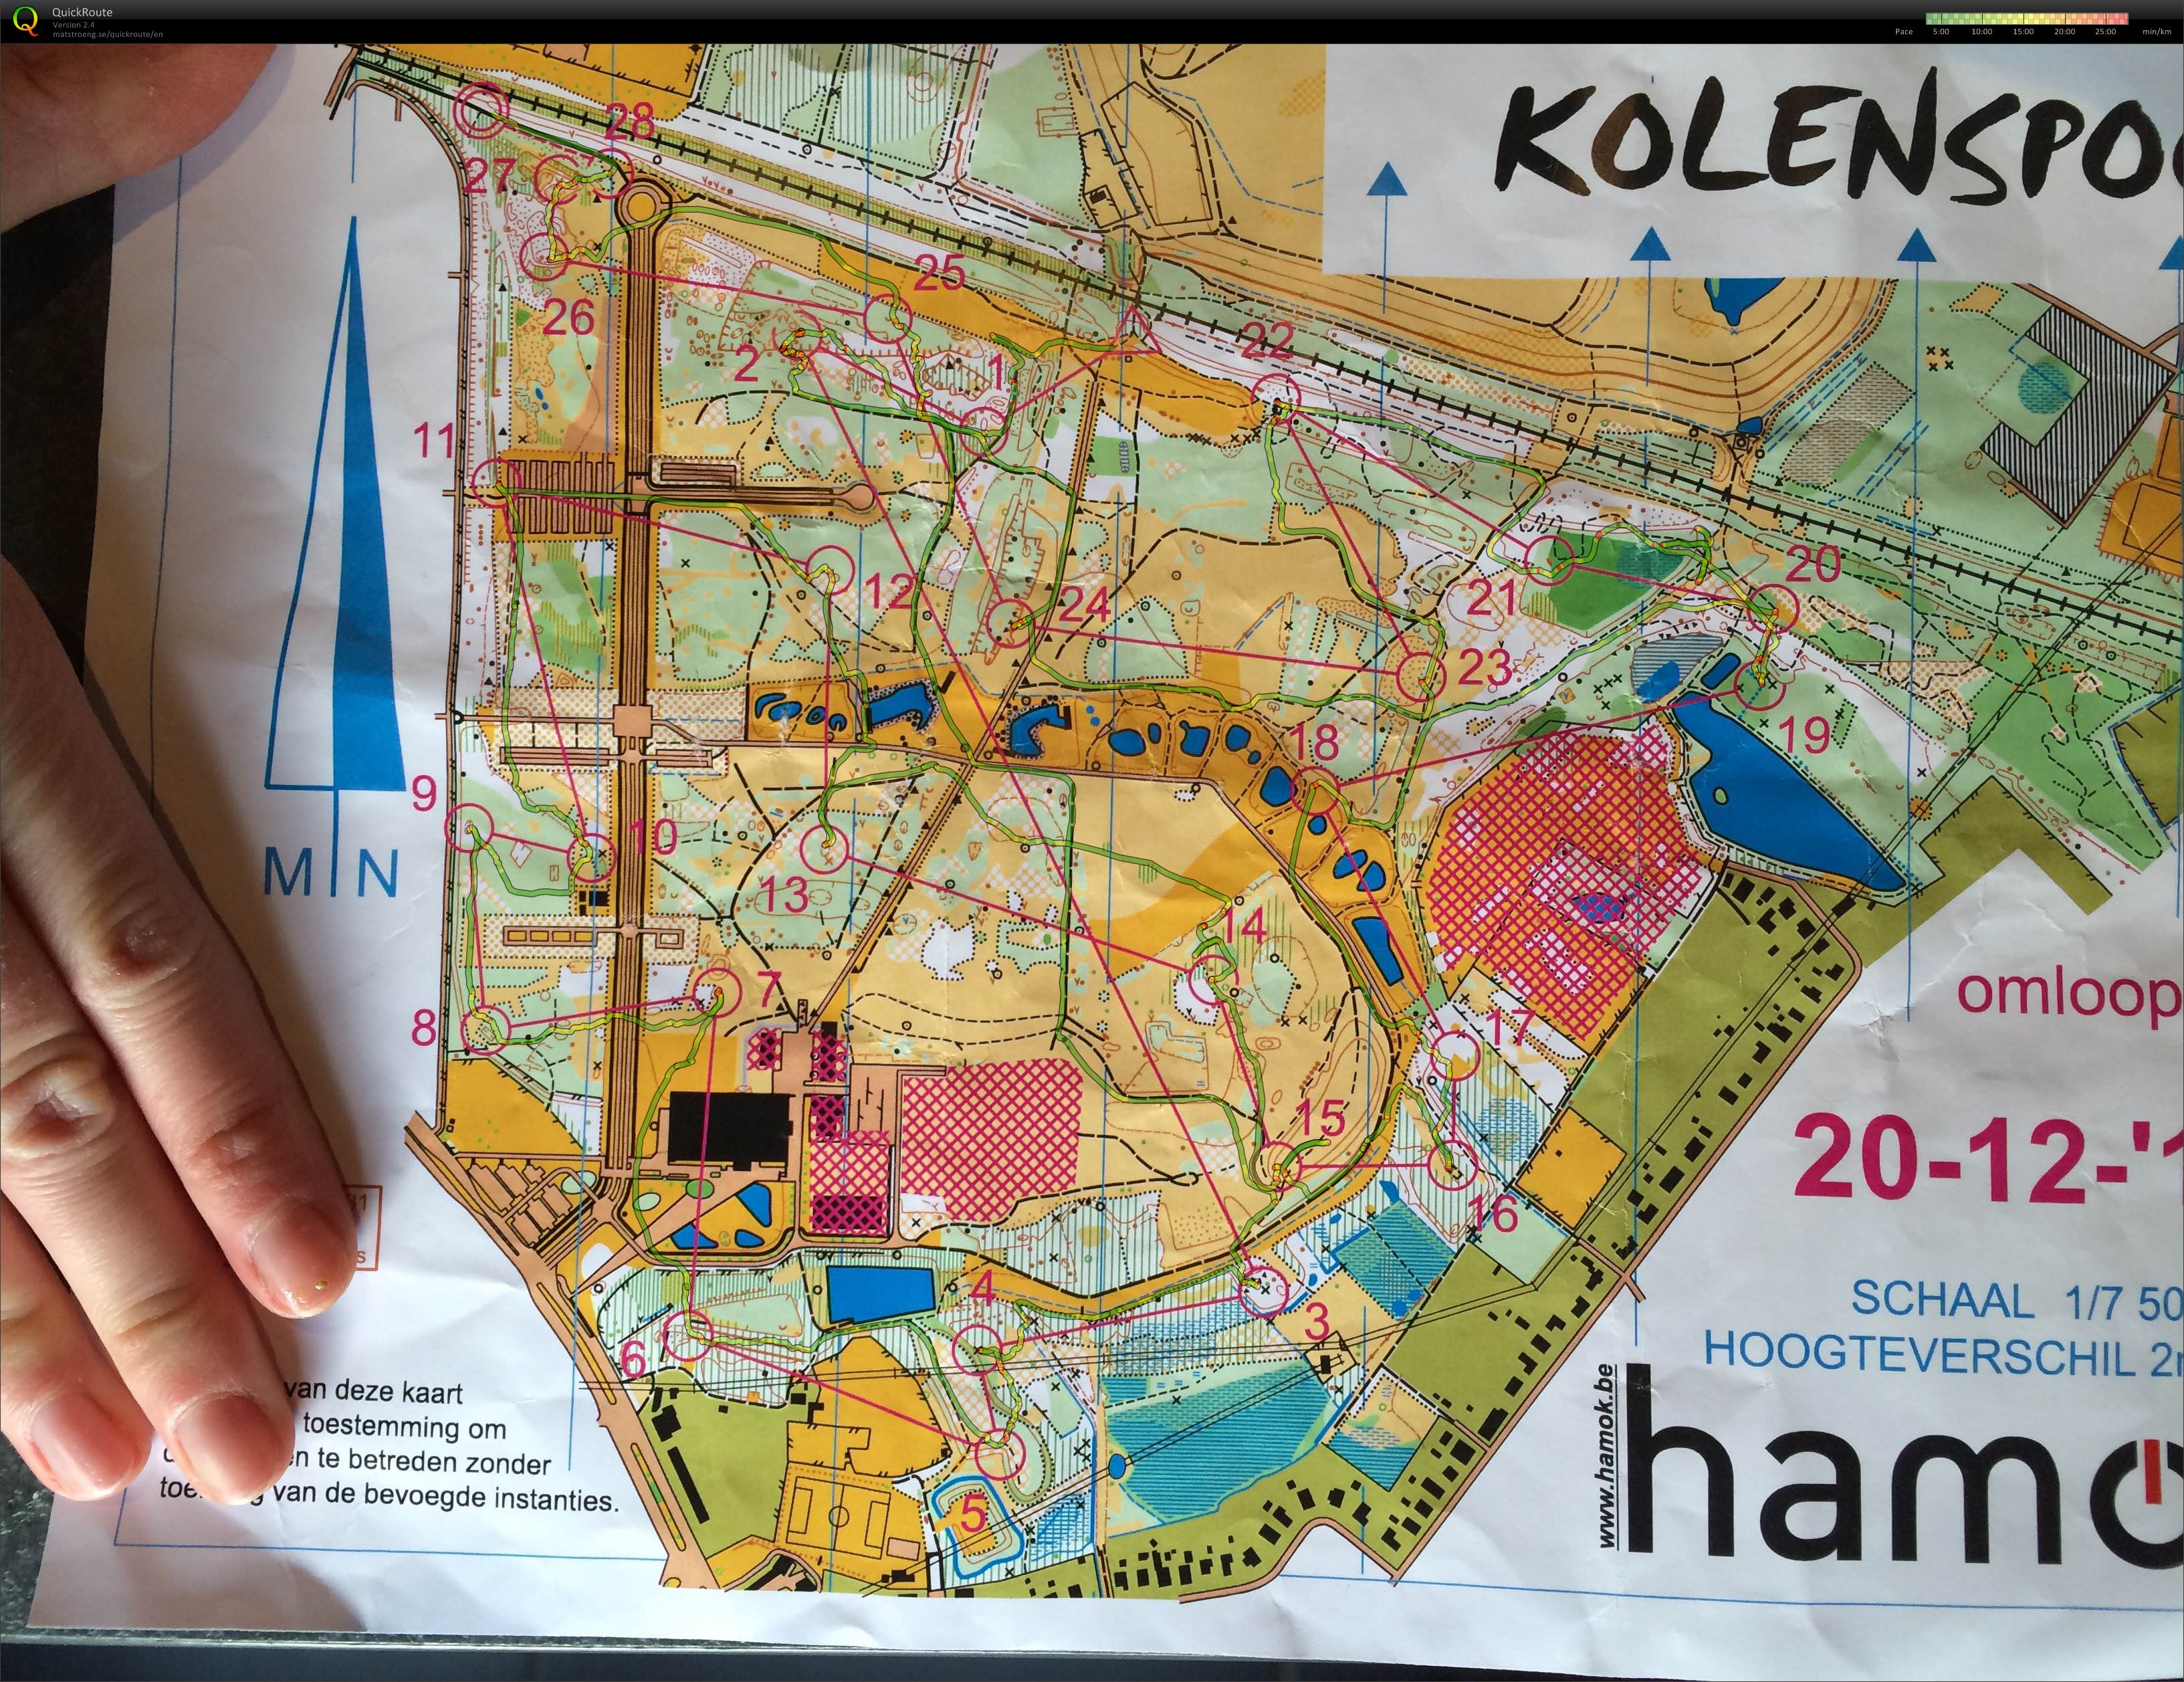 Kolenspoor (2015-12-20)